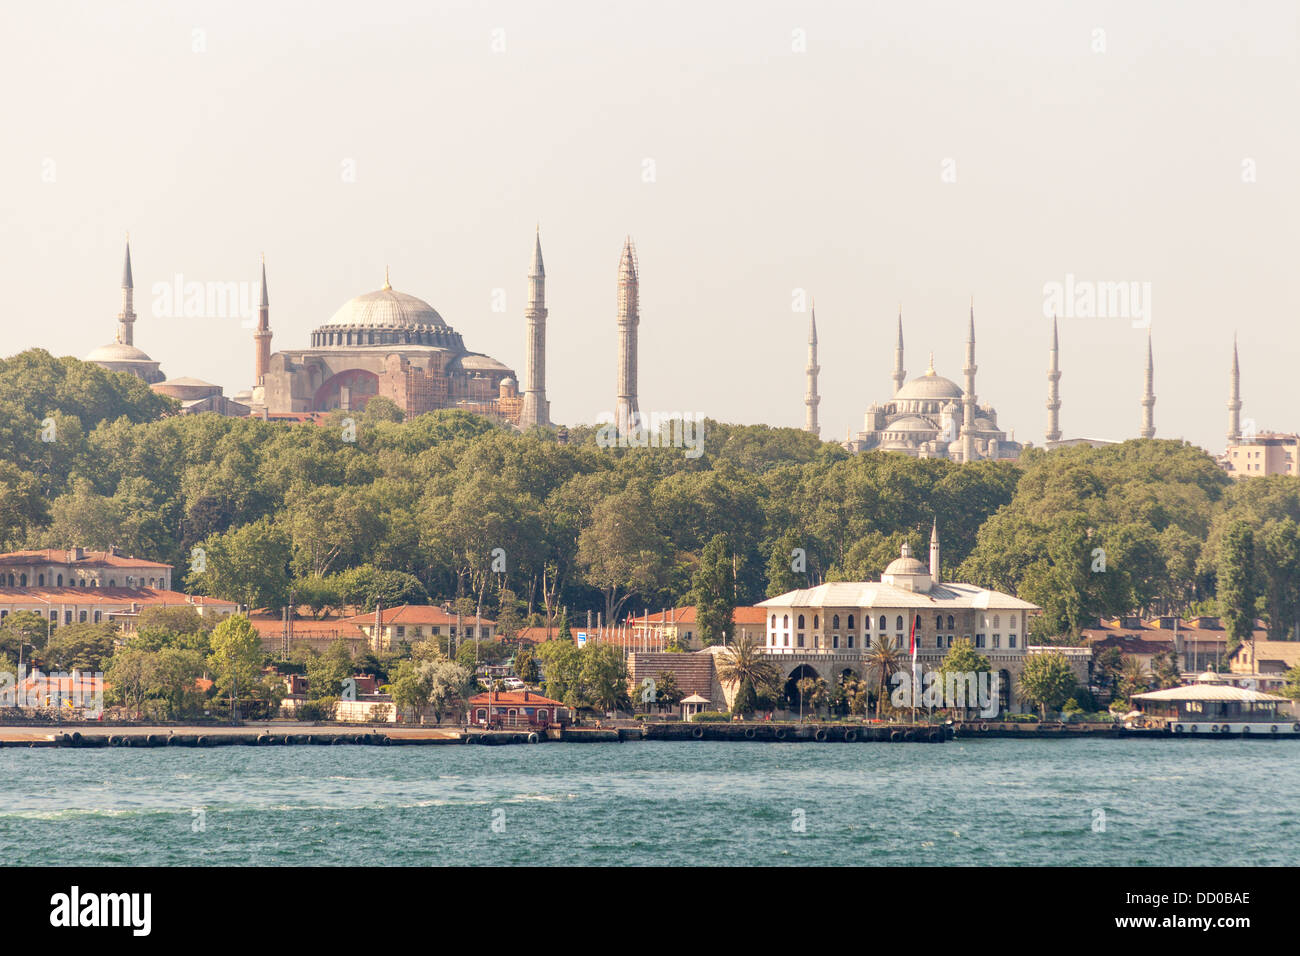 Hagia Sophia Mosque und Sultanahmet-Moschee, auch bekannt als blaue Moschee neben dem Bosporus, Istanbul, Türkei Stockfoto